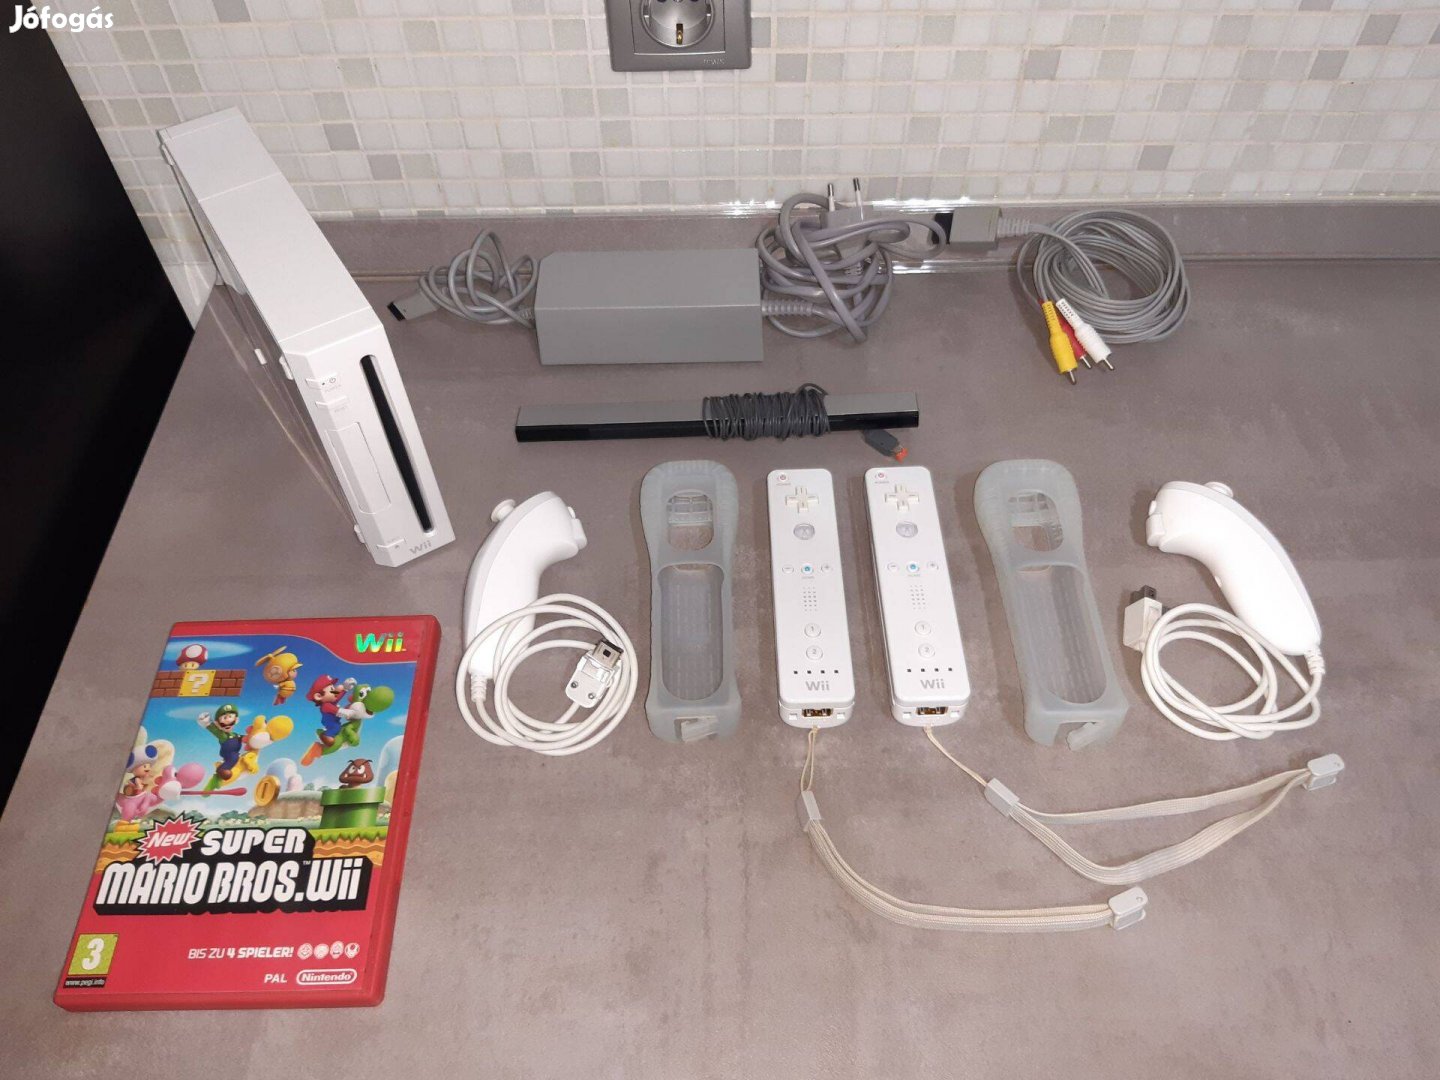 Nintendo Wii konzol (Rvl-001 EUR) + Mario Bros játék Tesztelt, Wii02